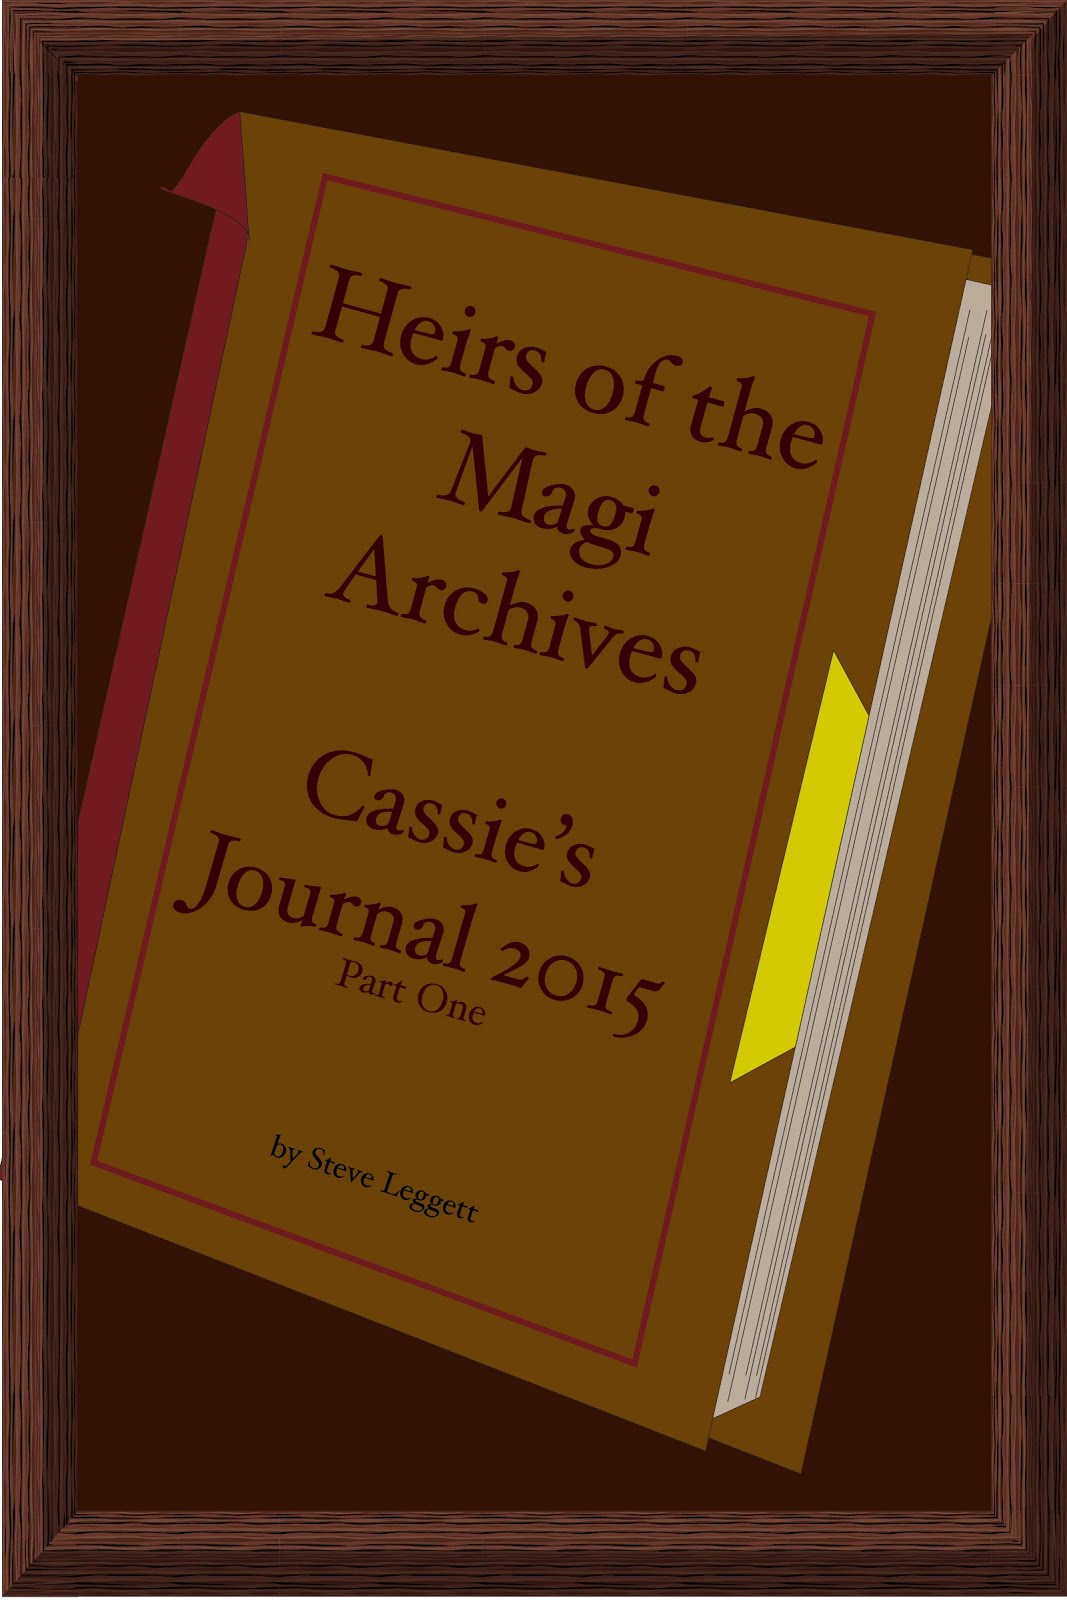 Cassie's Journal 2015 - Part One